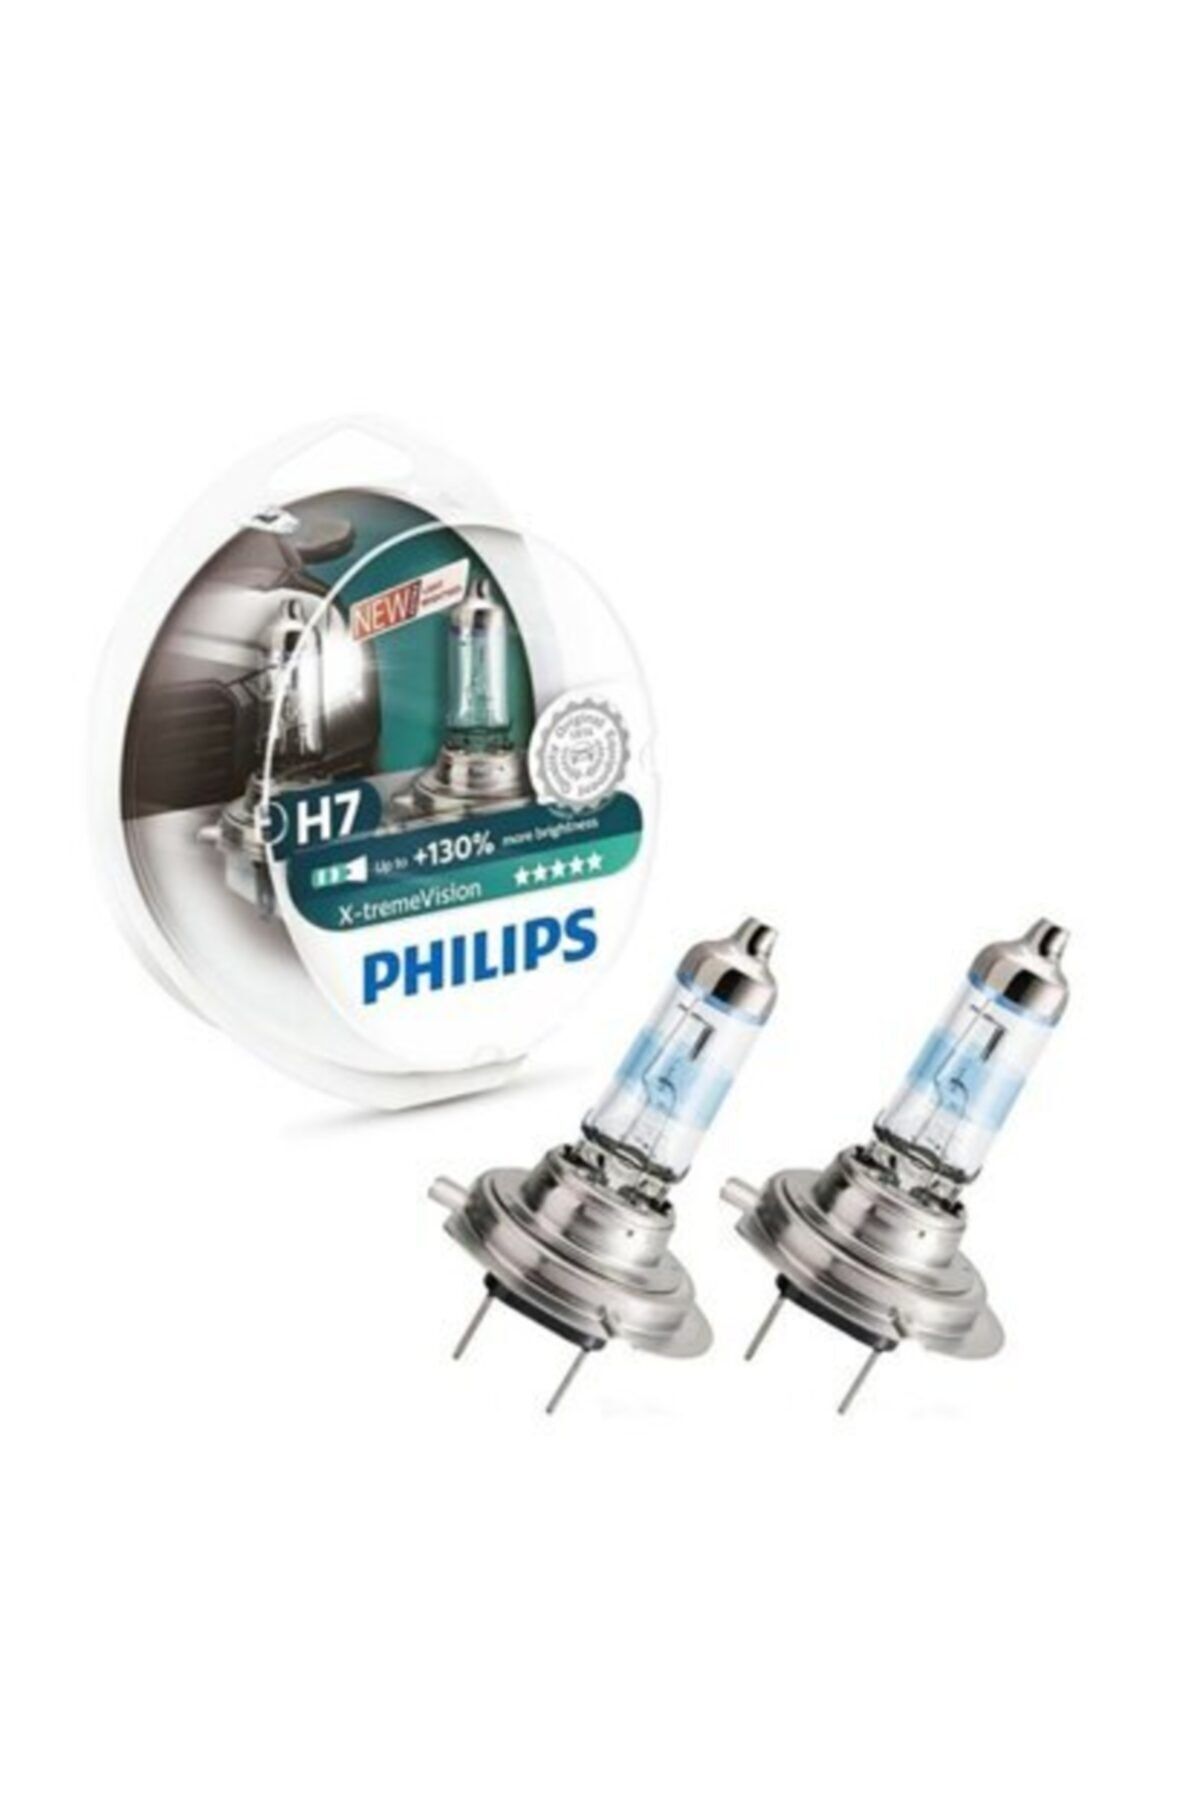 Филипс 130. Philips h7 +130. Philips x-treme Vision h7. Philips x-treme Vision +130 h7. Philips x-treme Vision 12972xv.